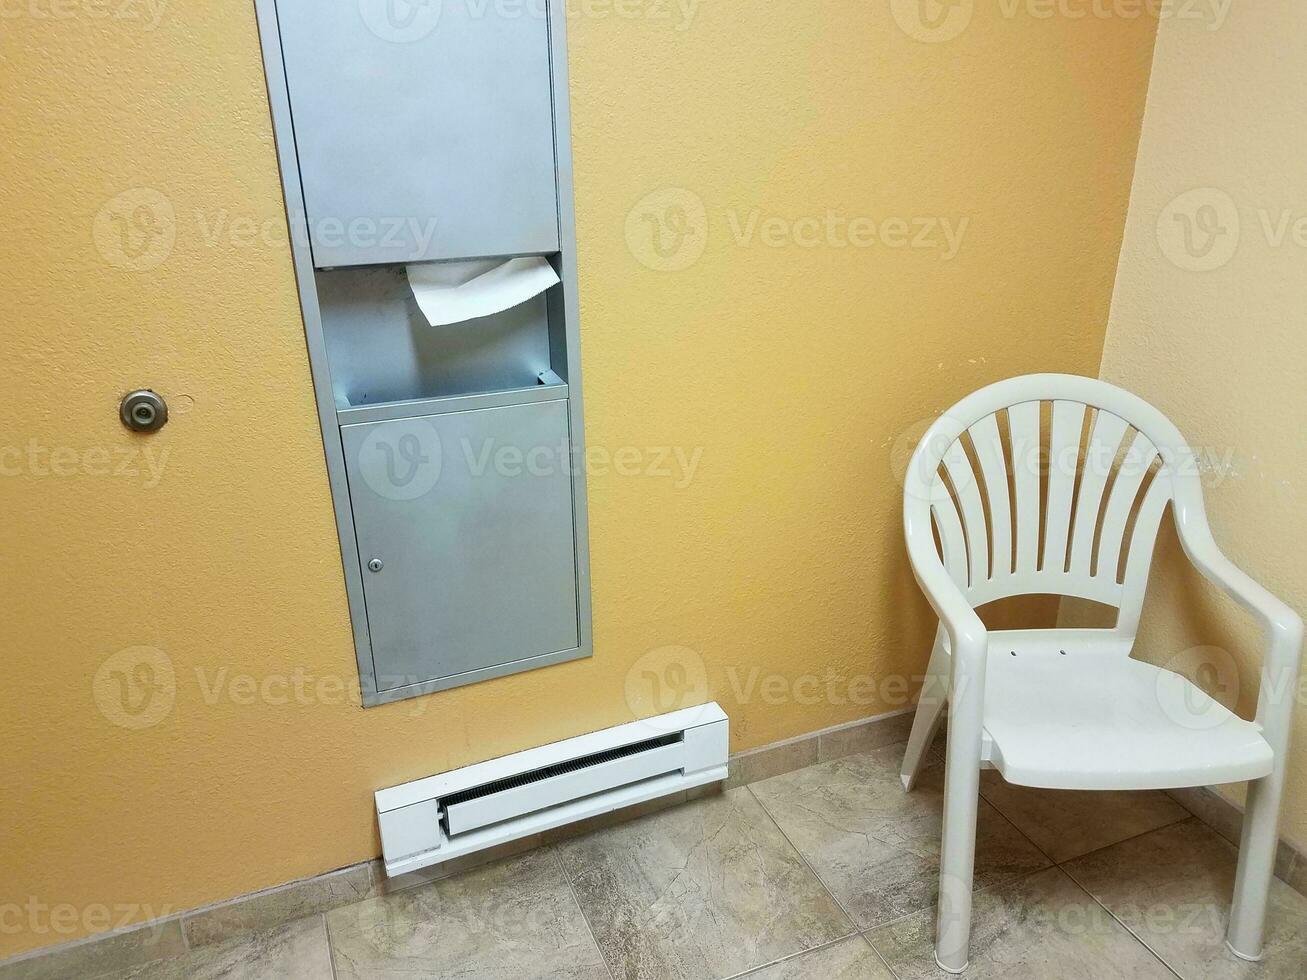 chaise et chauffage au sol et distributeur de serviettes en papier dans la salle de bain photo